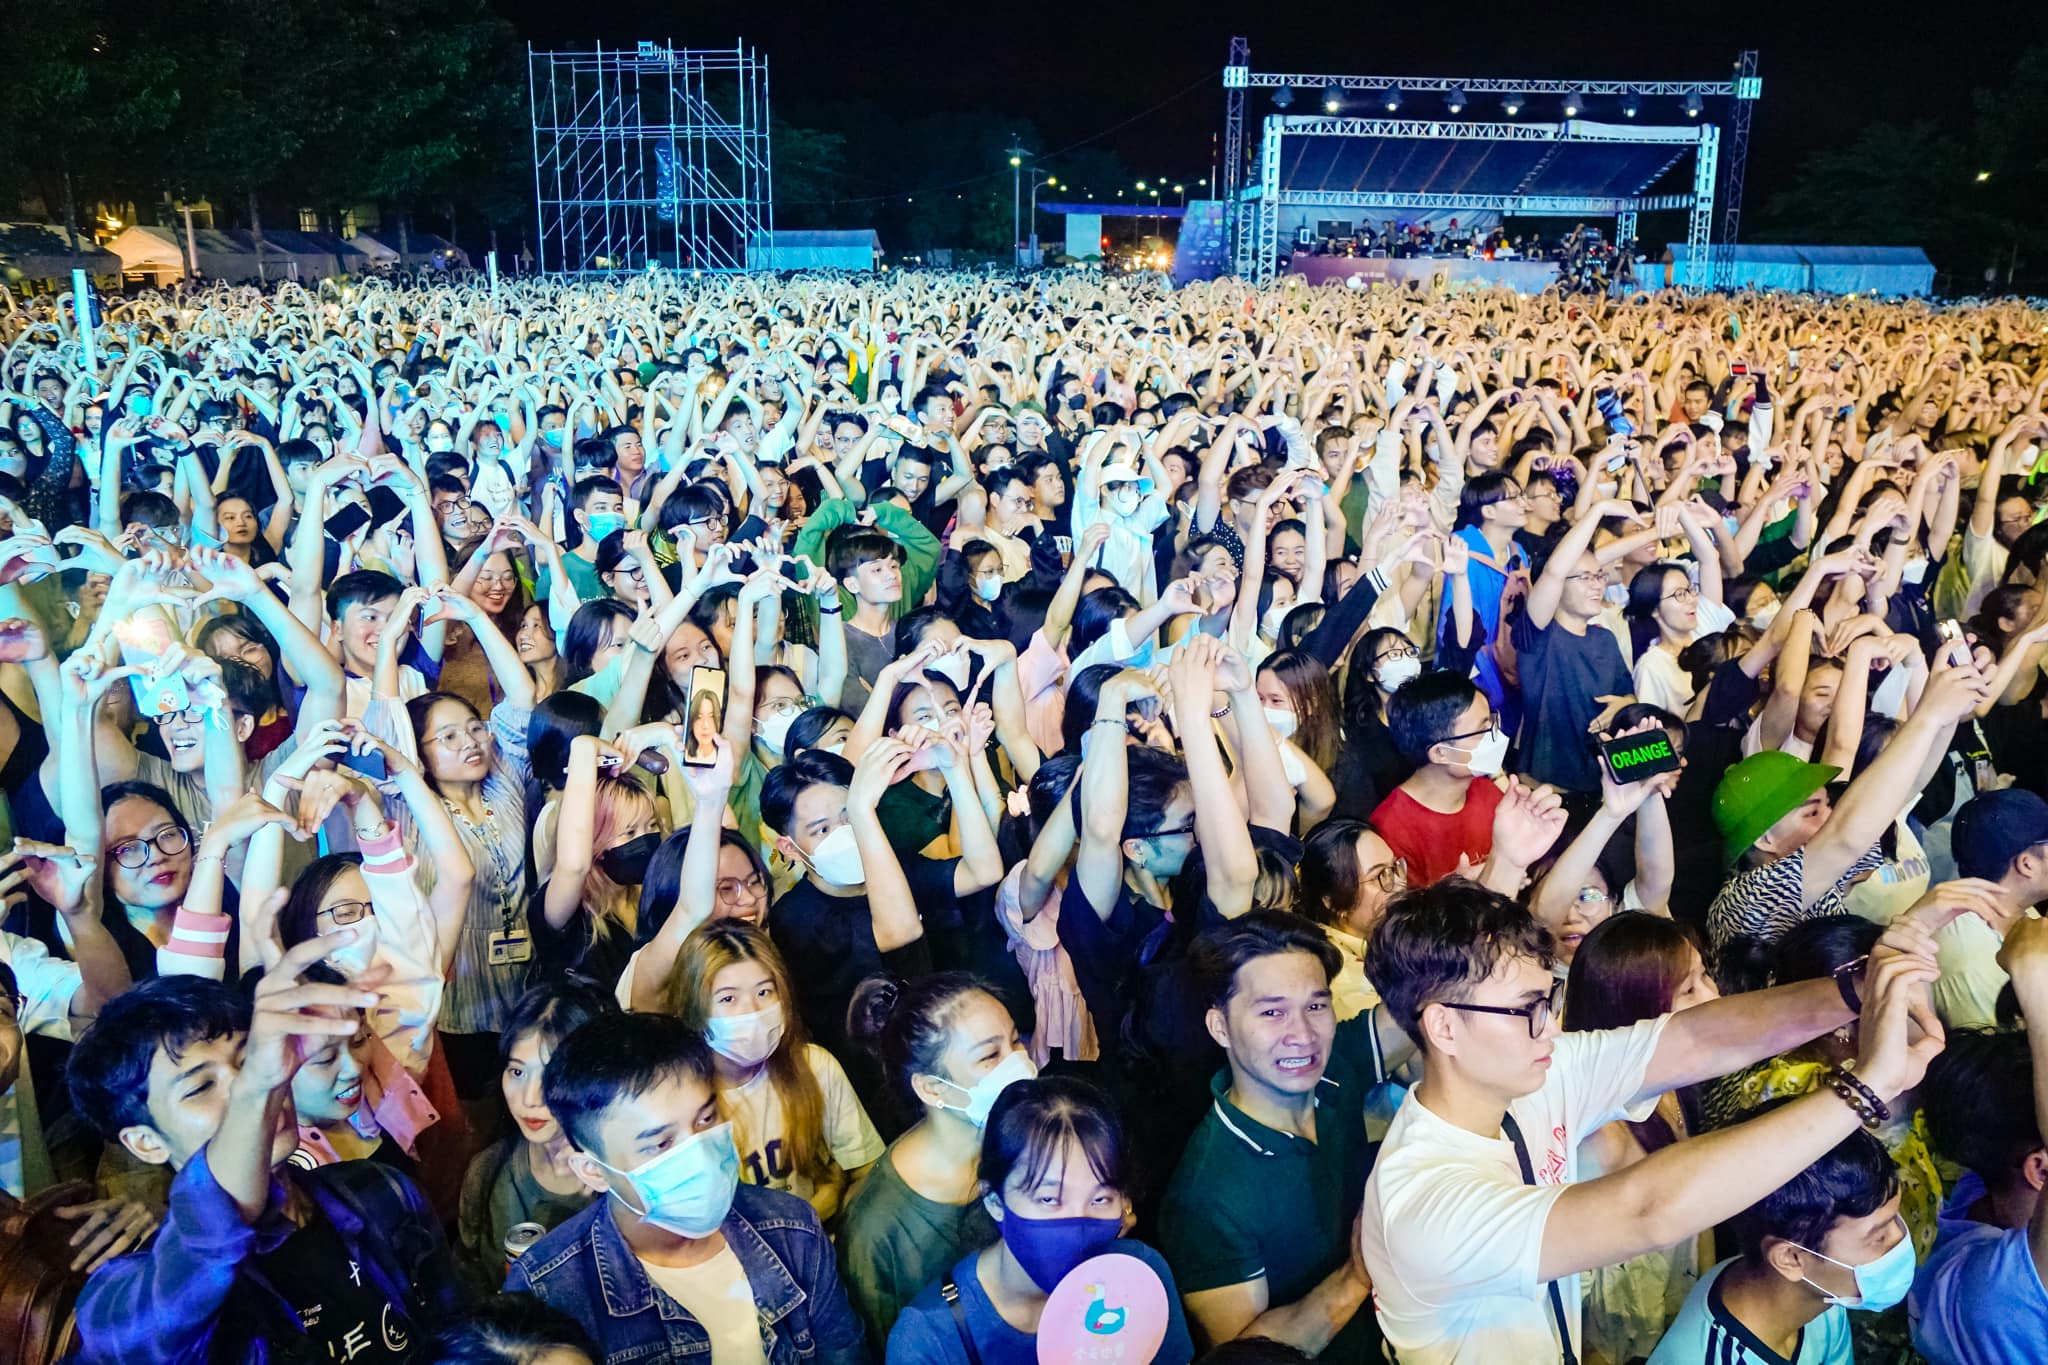 Bật mí ekip “đứng sau” đêm nhạc MTV School Fest bùng nổ cùng 40.000 sinh viên tại Ký túc xá Đại học Quốc gia TP. Hồ Chí Minh